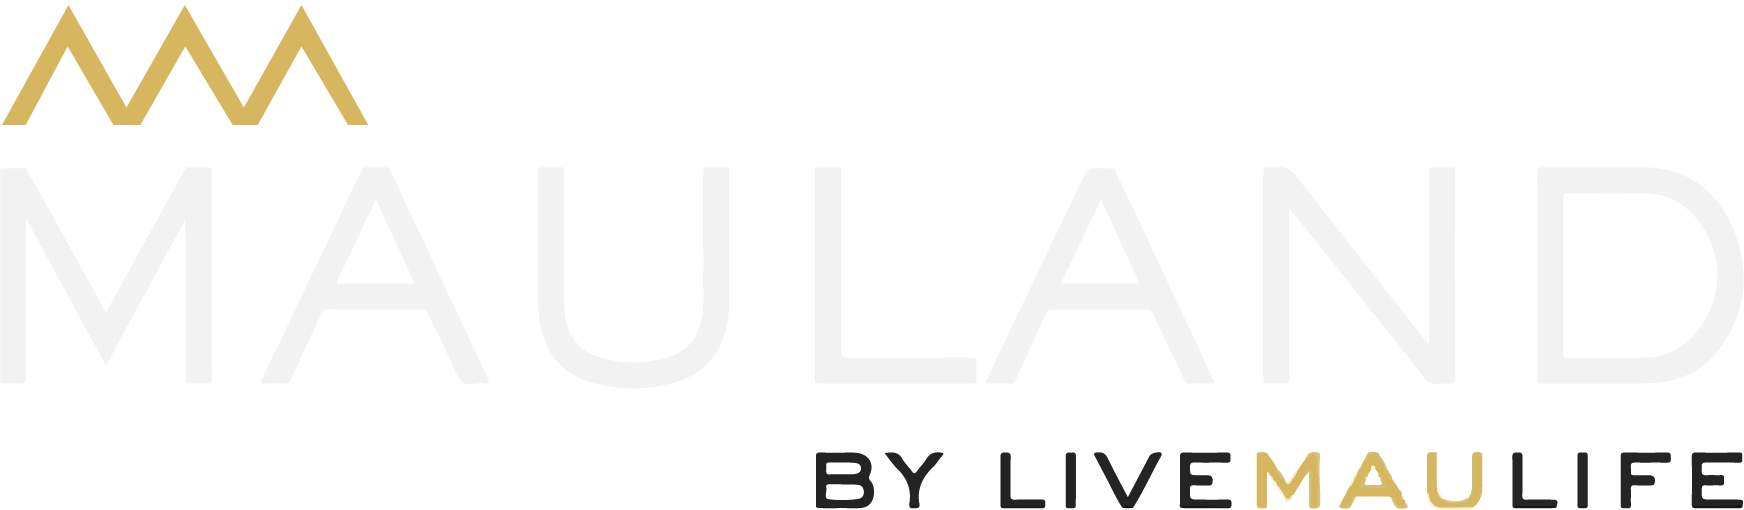 Mauland logo transparent